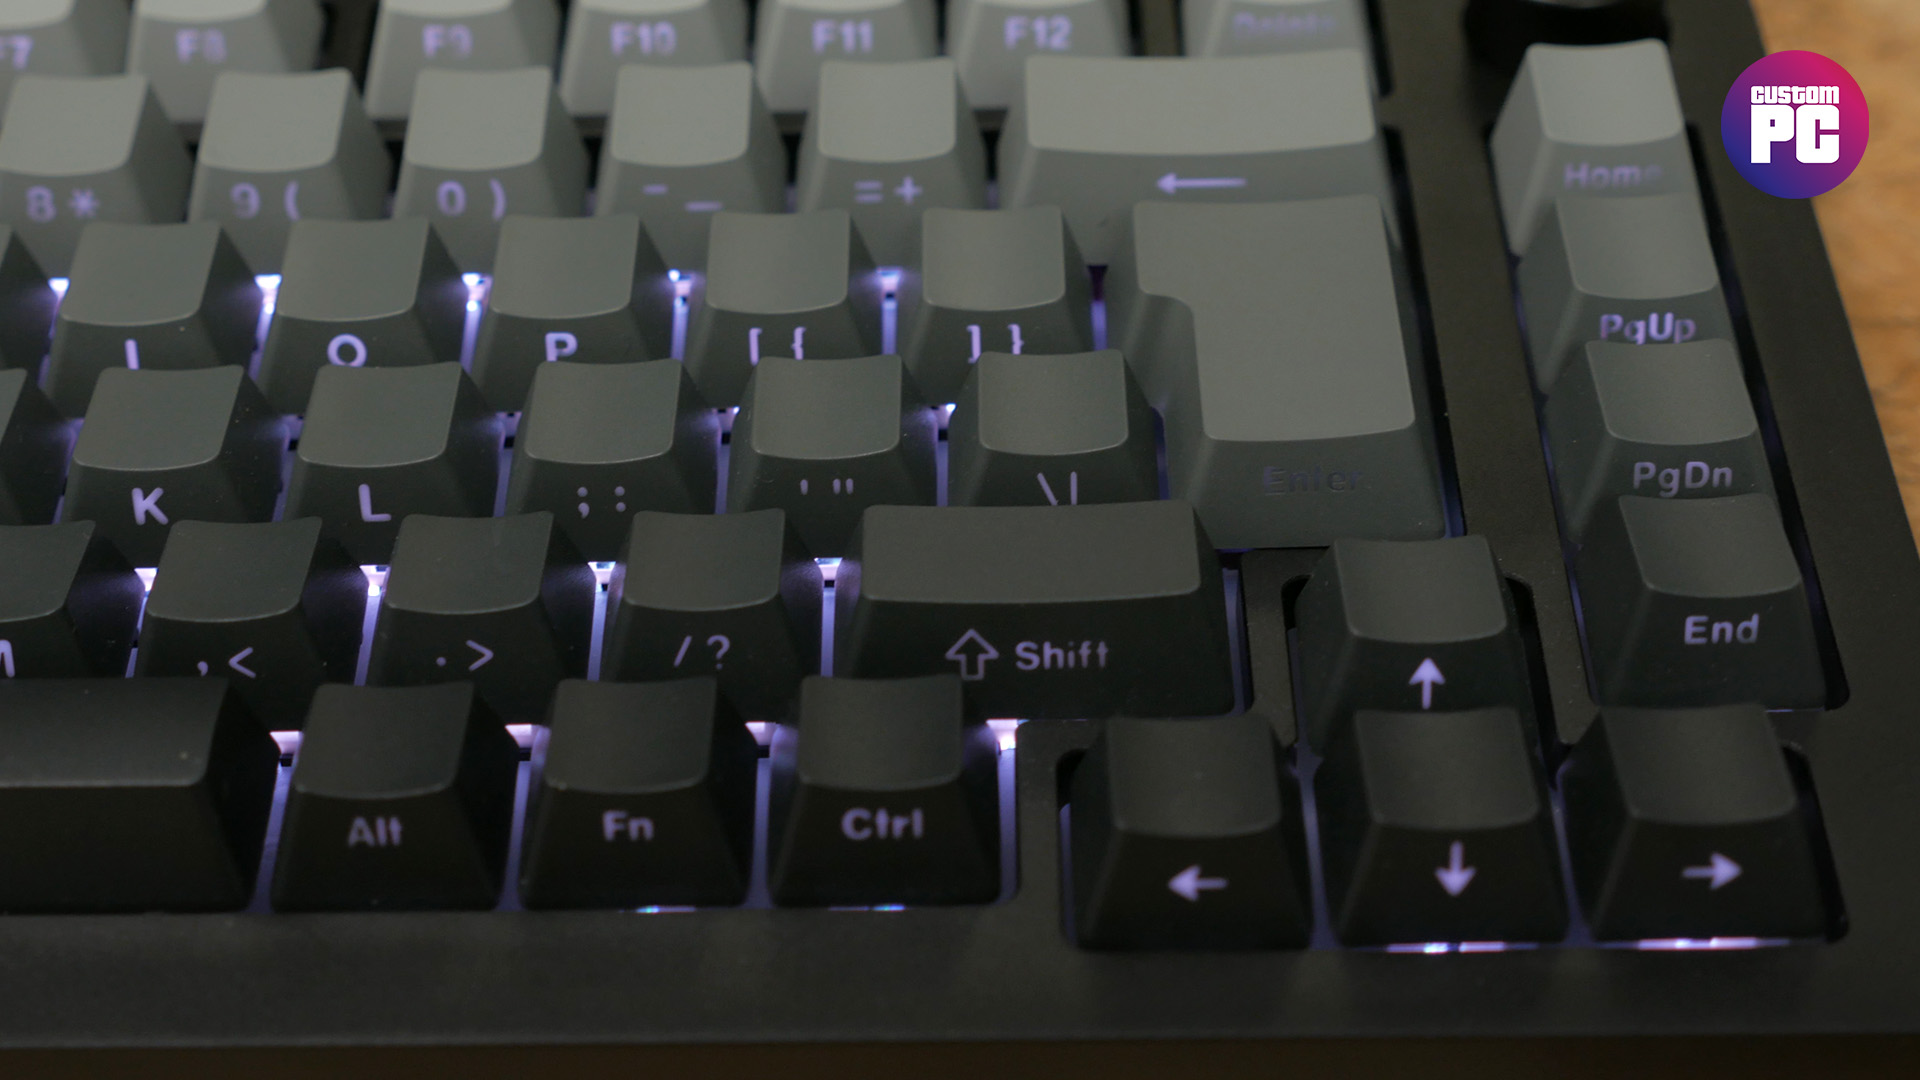 Monsgeek M1W SP review image showing backlighting behind the keys.